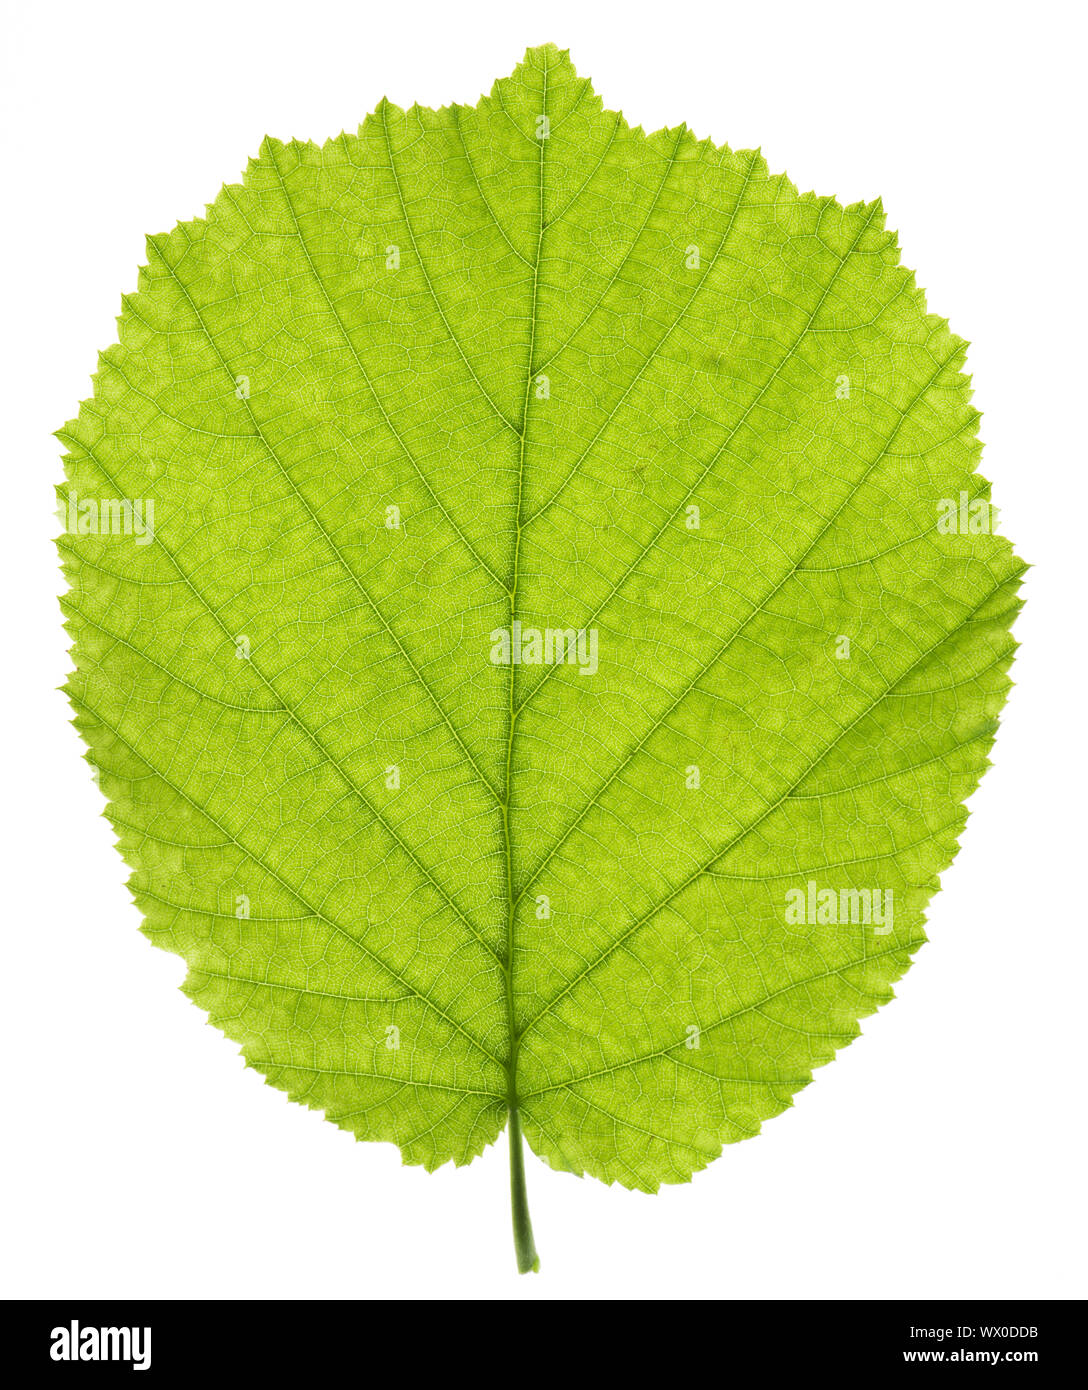 single leaf of hazelnut tree isolated over white background Stock Photo